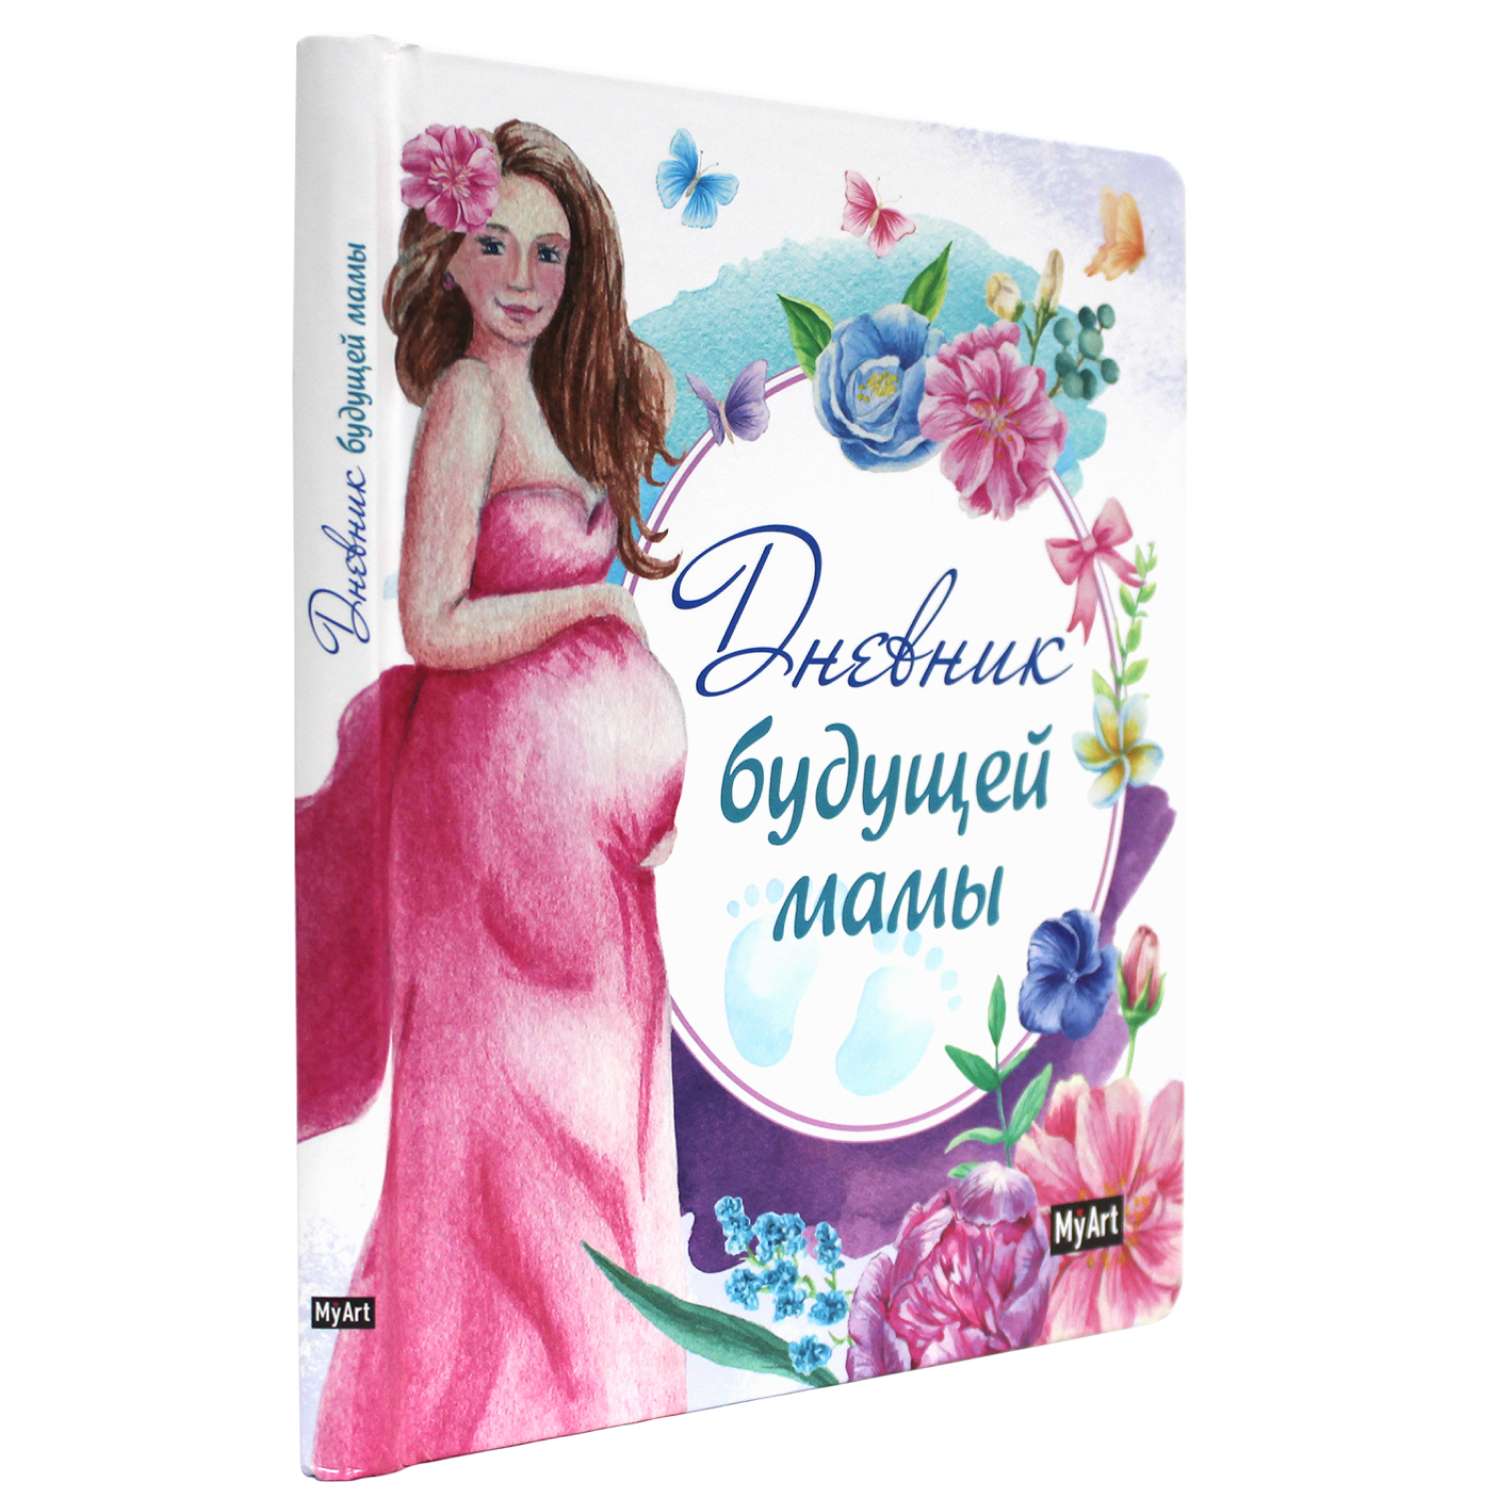 Дневник беременности купить в Ташкенте - интернет-магазин Create'